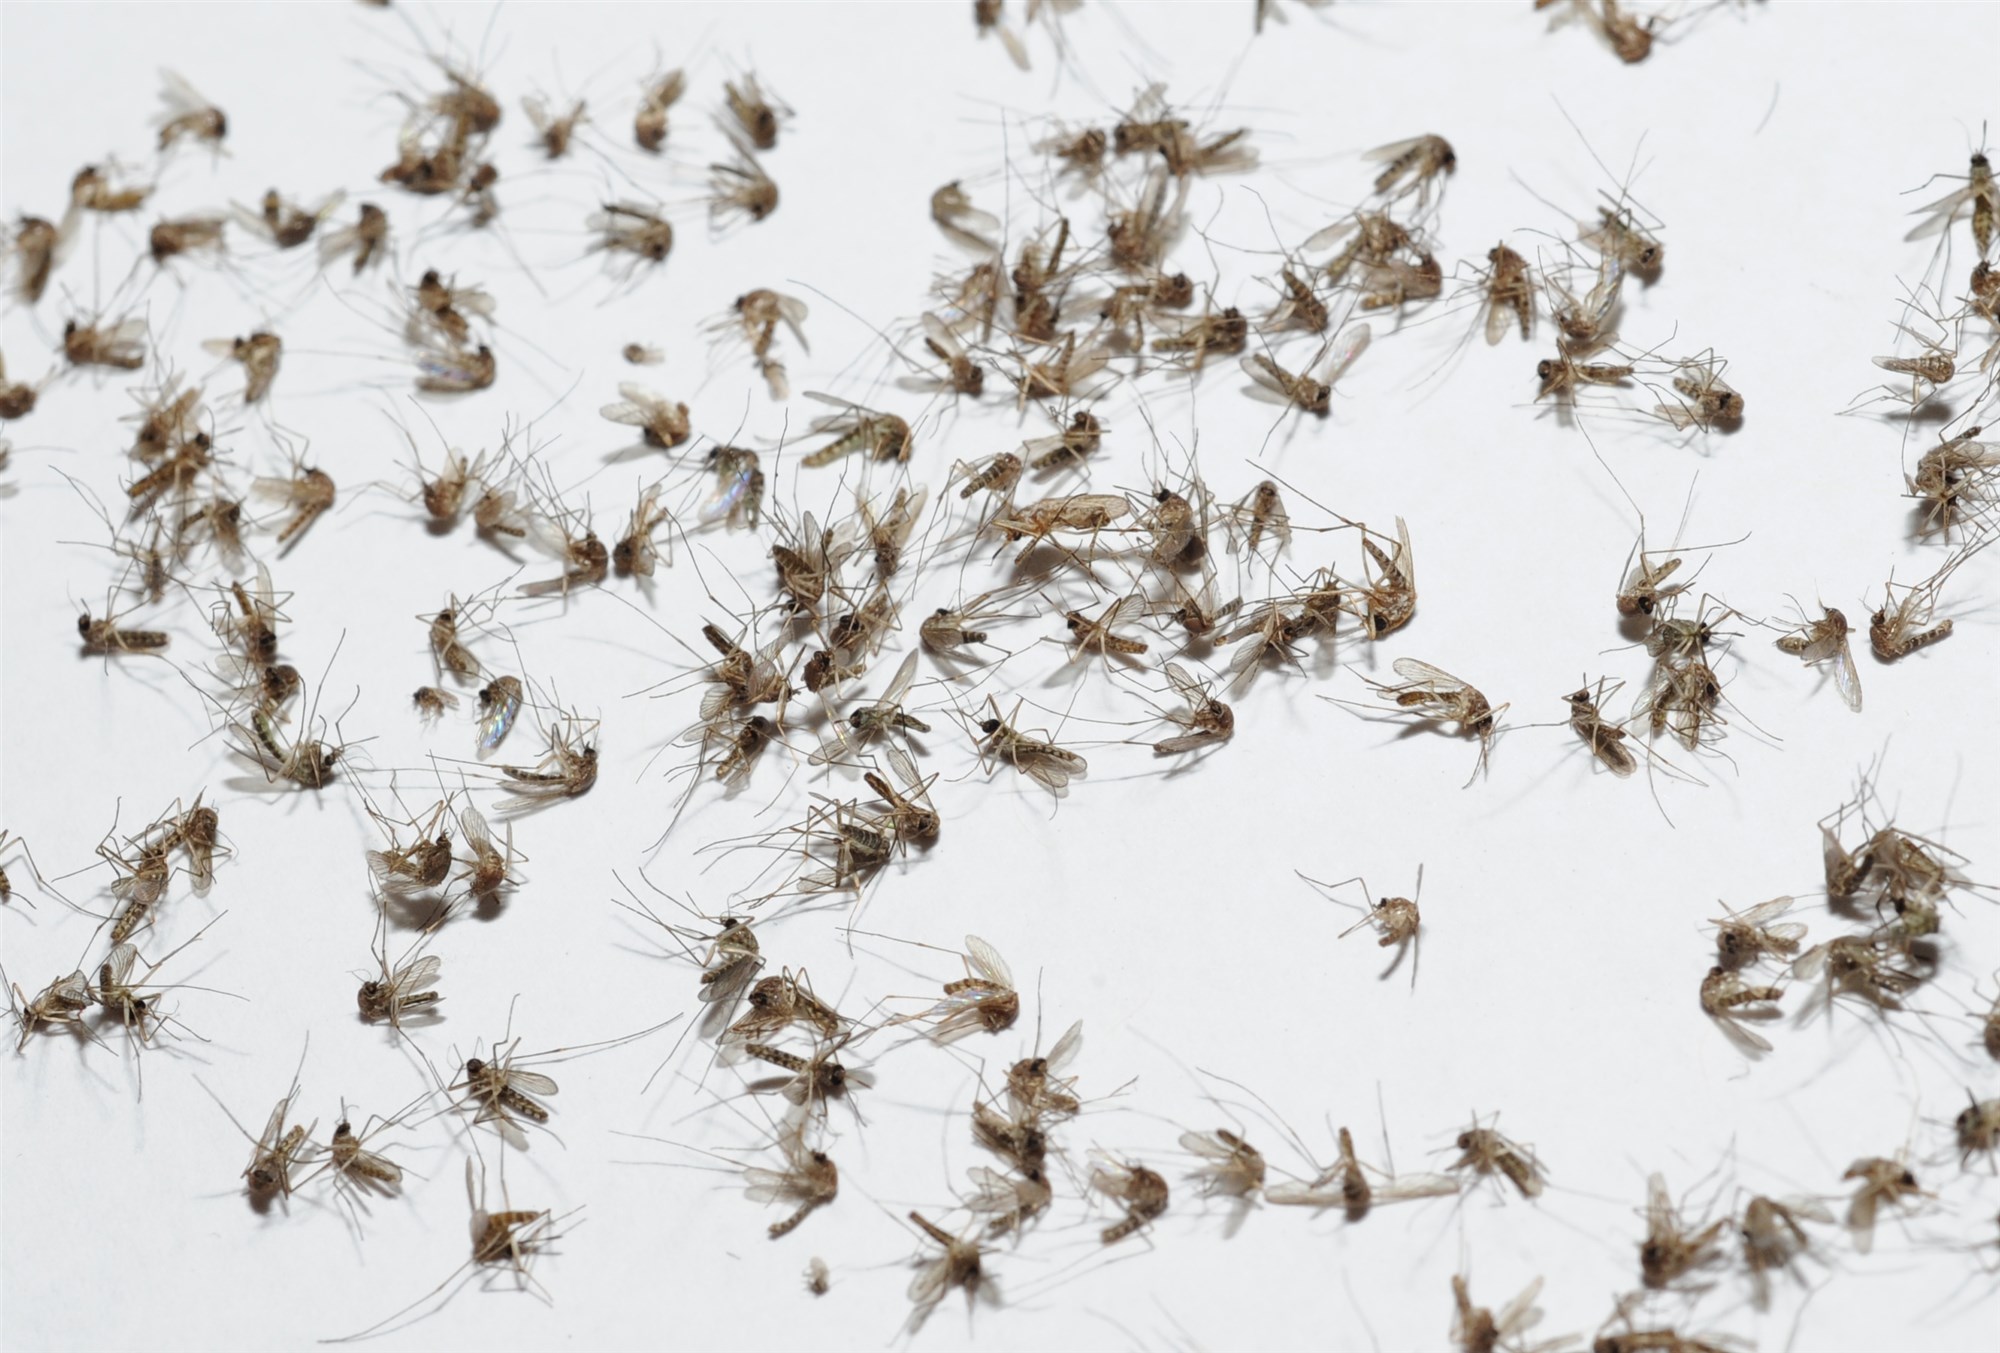 Imagen destacada sobre 5 productos para ahuyentar mosquitos que quizás no conocías que vendiese zotal